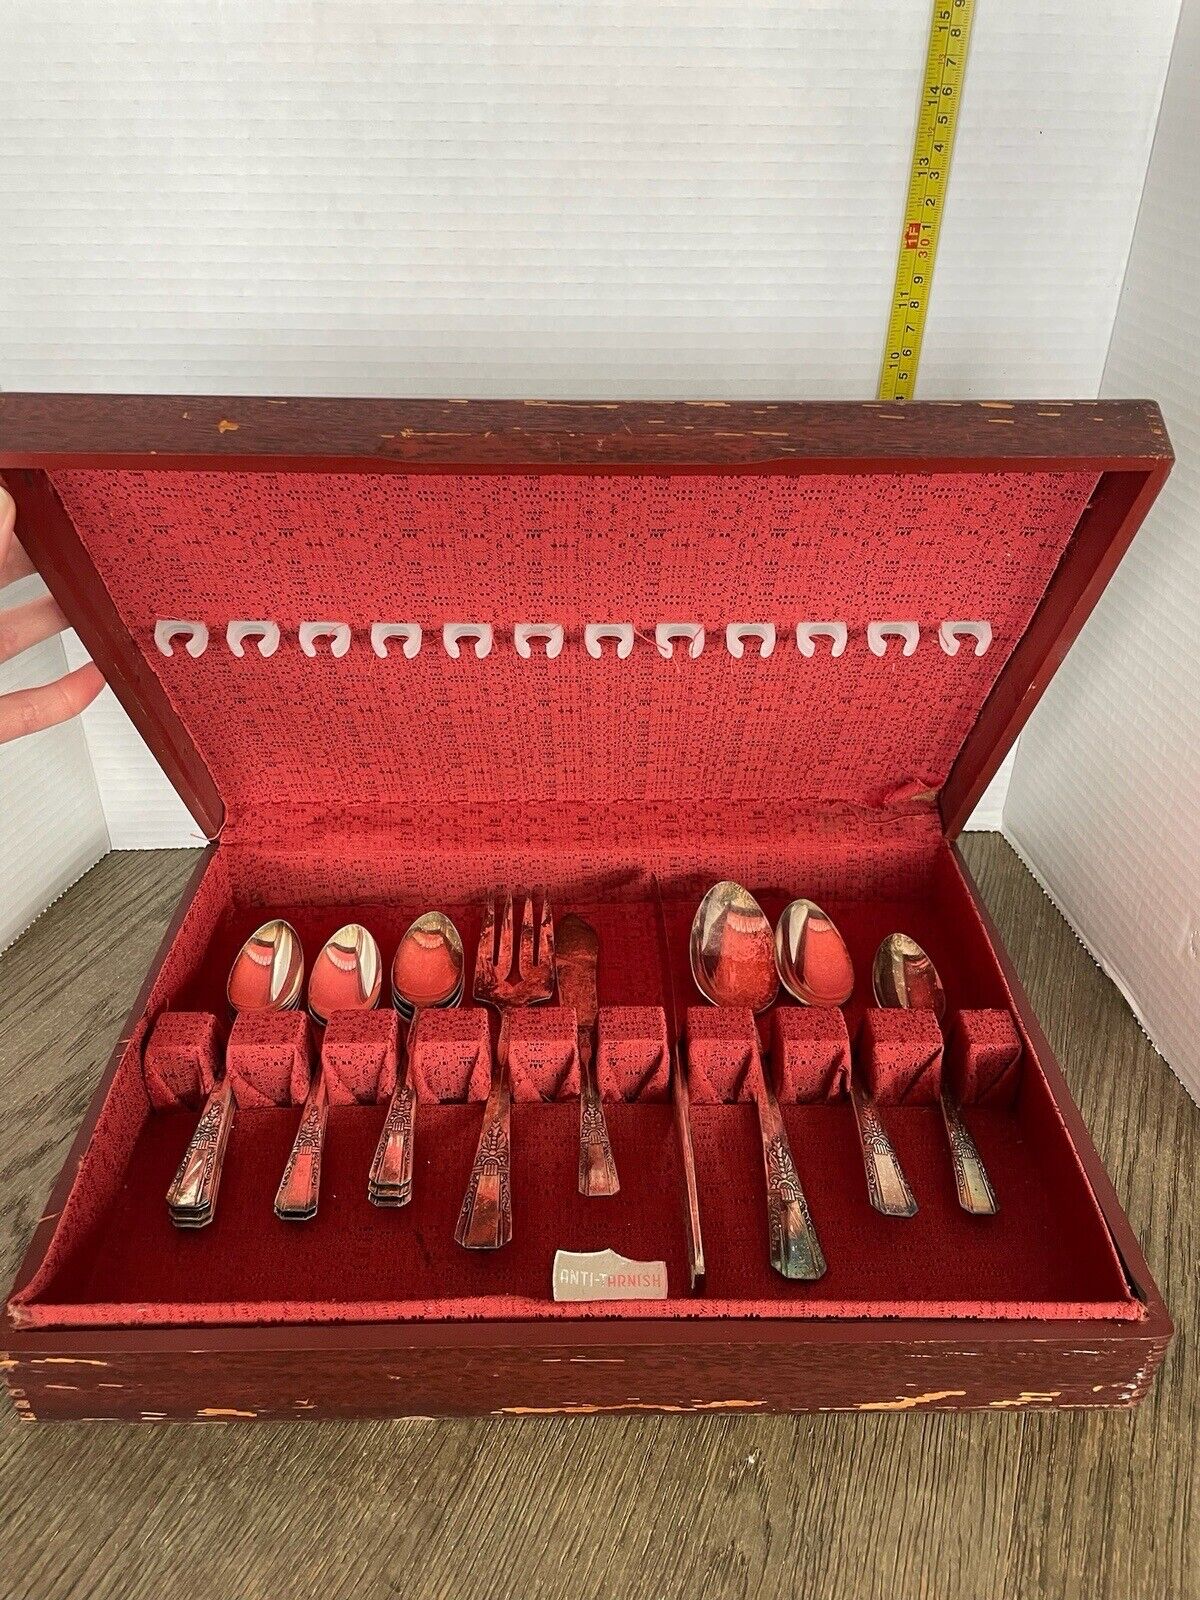 ONEIDA debonair vintage flatware set 14 pieces and case